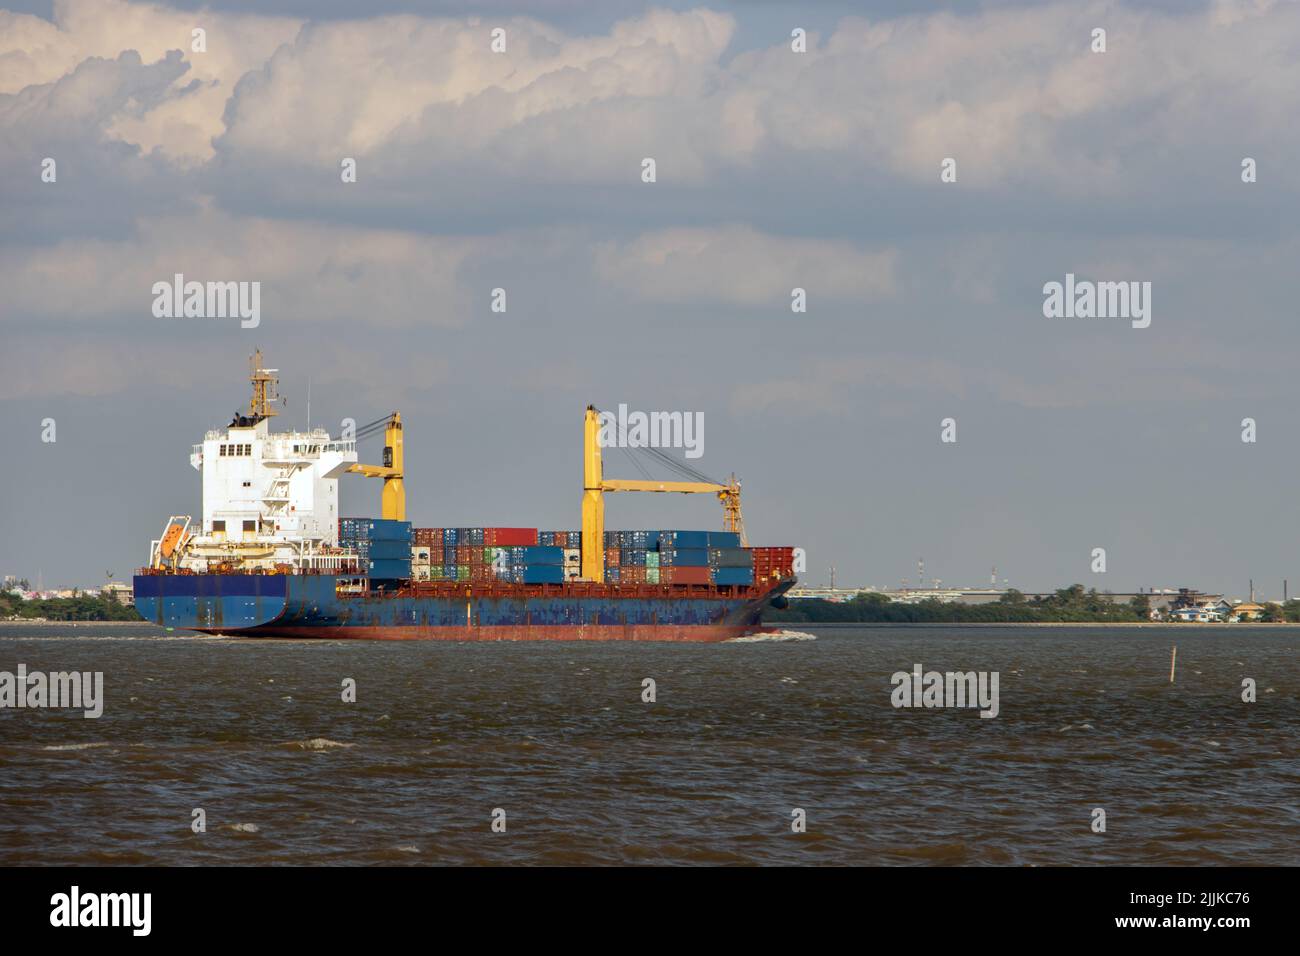 Das Containerschiff, das mit Containern beladen ist, fährt an einer Küste entlang Stockfoto